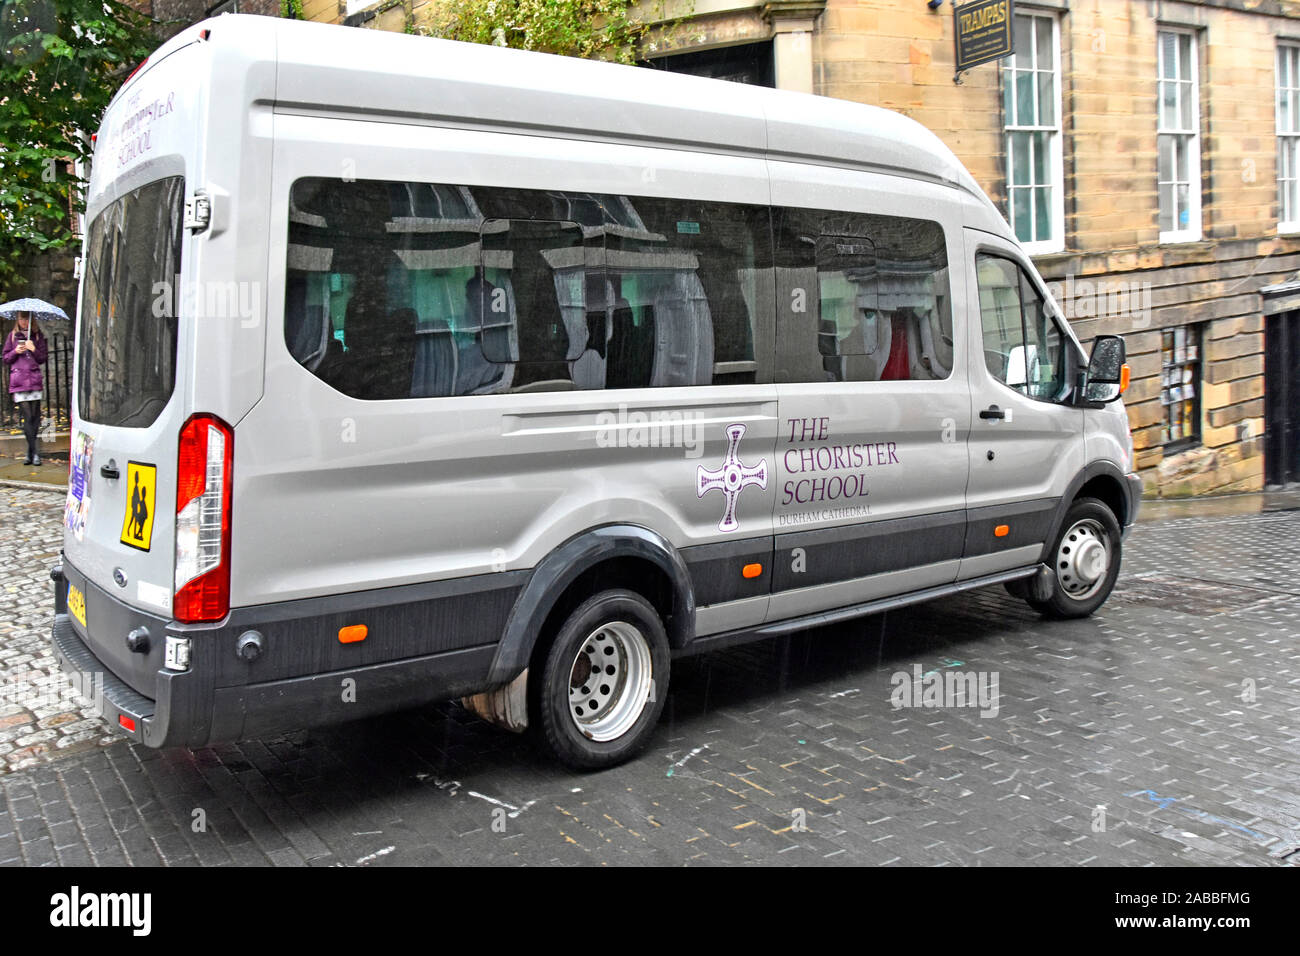 Ford school mini bus véhicule utilisé par l'école indépendante choriste offrant aux éducation & formation choristes à la cathédrale de Durham England UK Banque D'Images